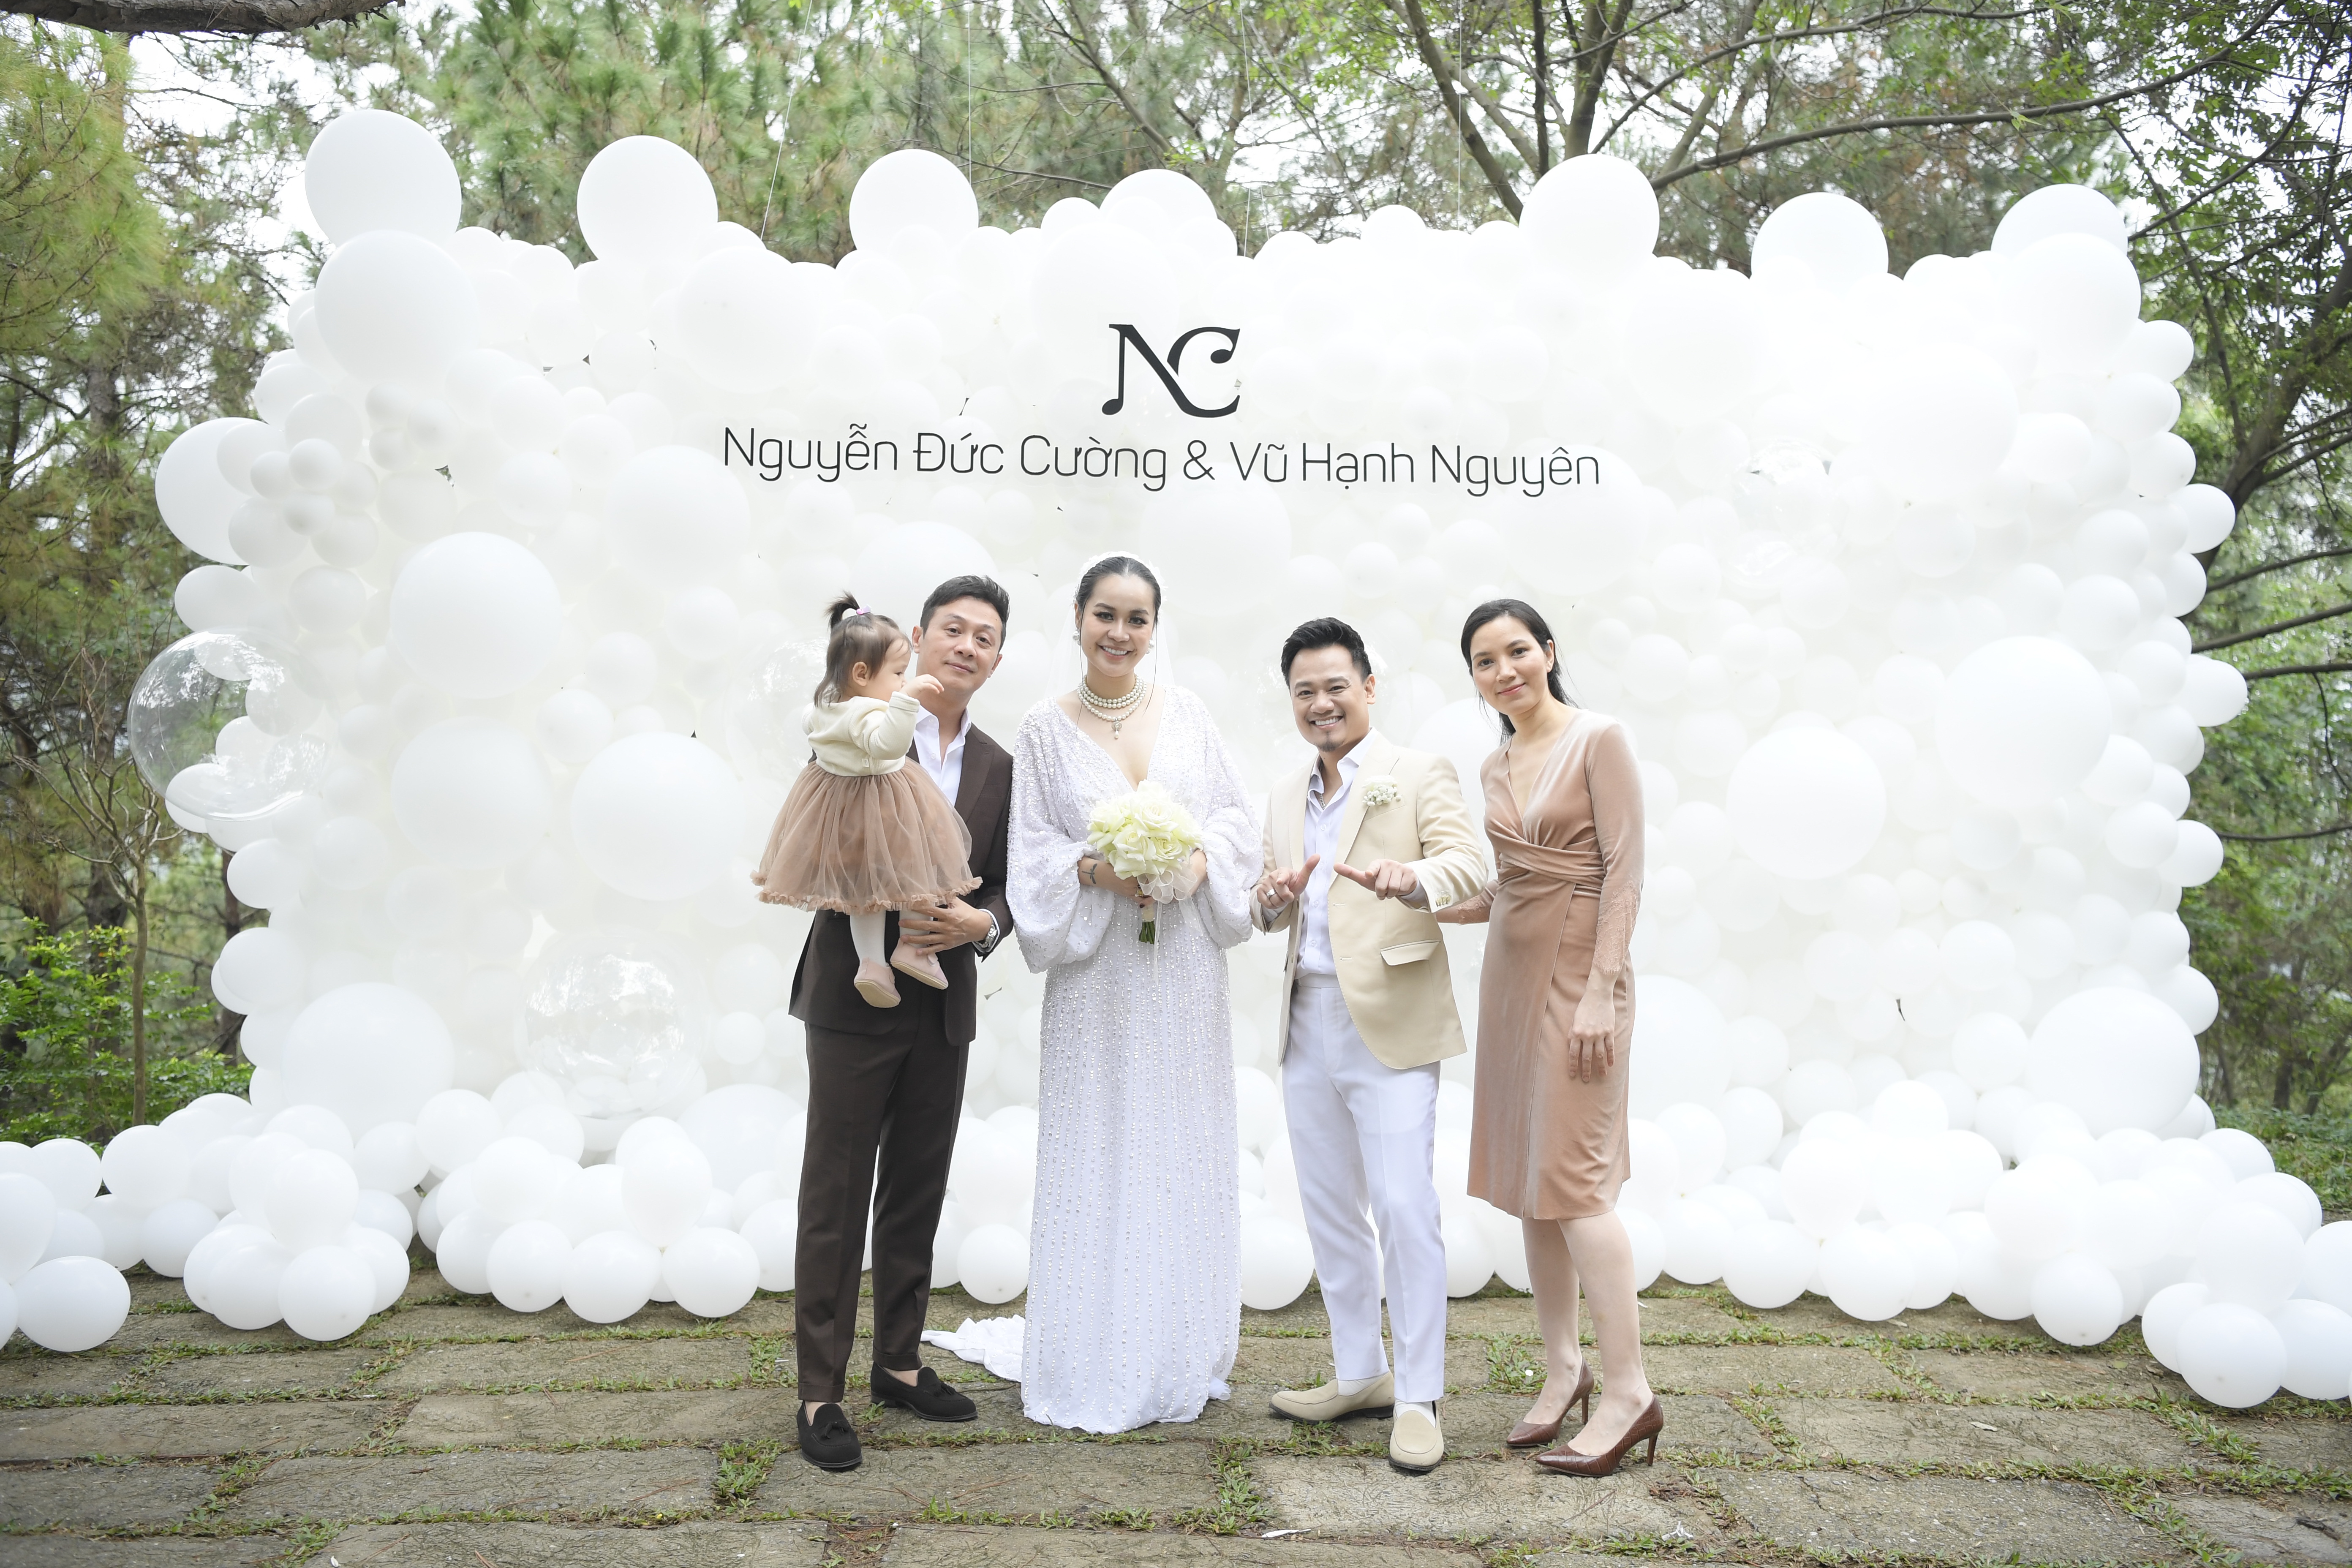 Vợ chồng MC Anh Tuấn và con gái tham dự tiệc cưới của Nguyễn Đức Cường và Vũ Hạnh Nguyên